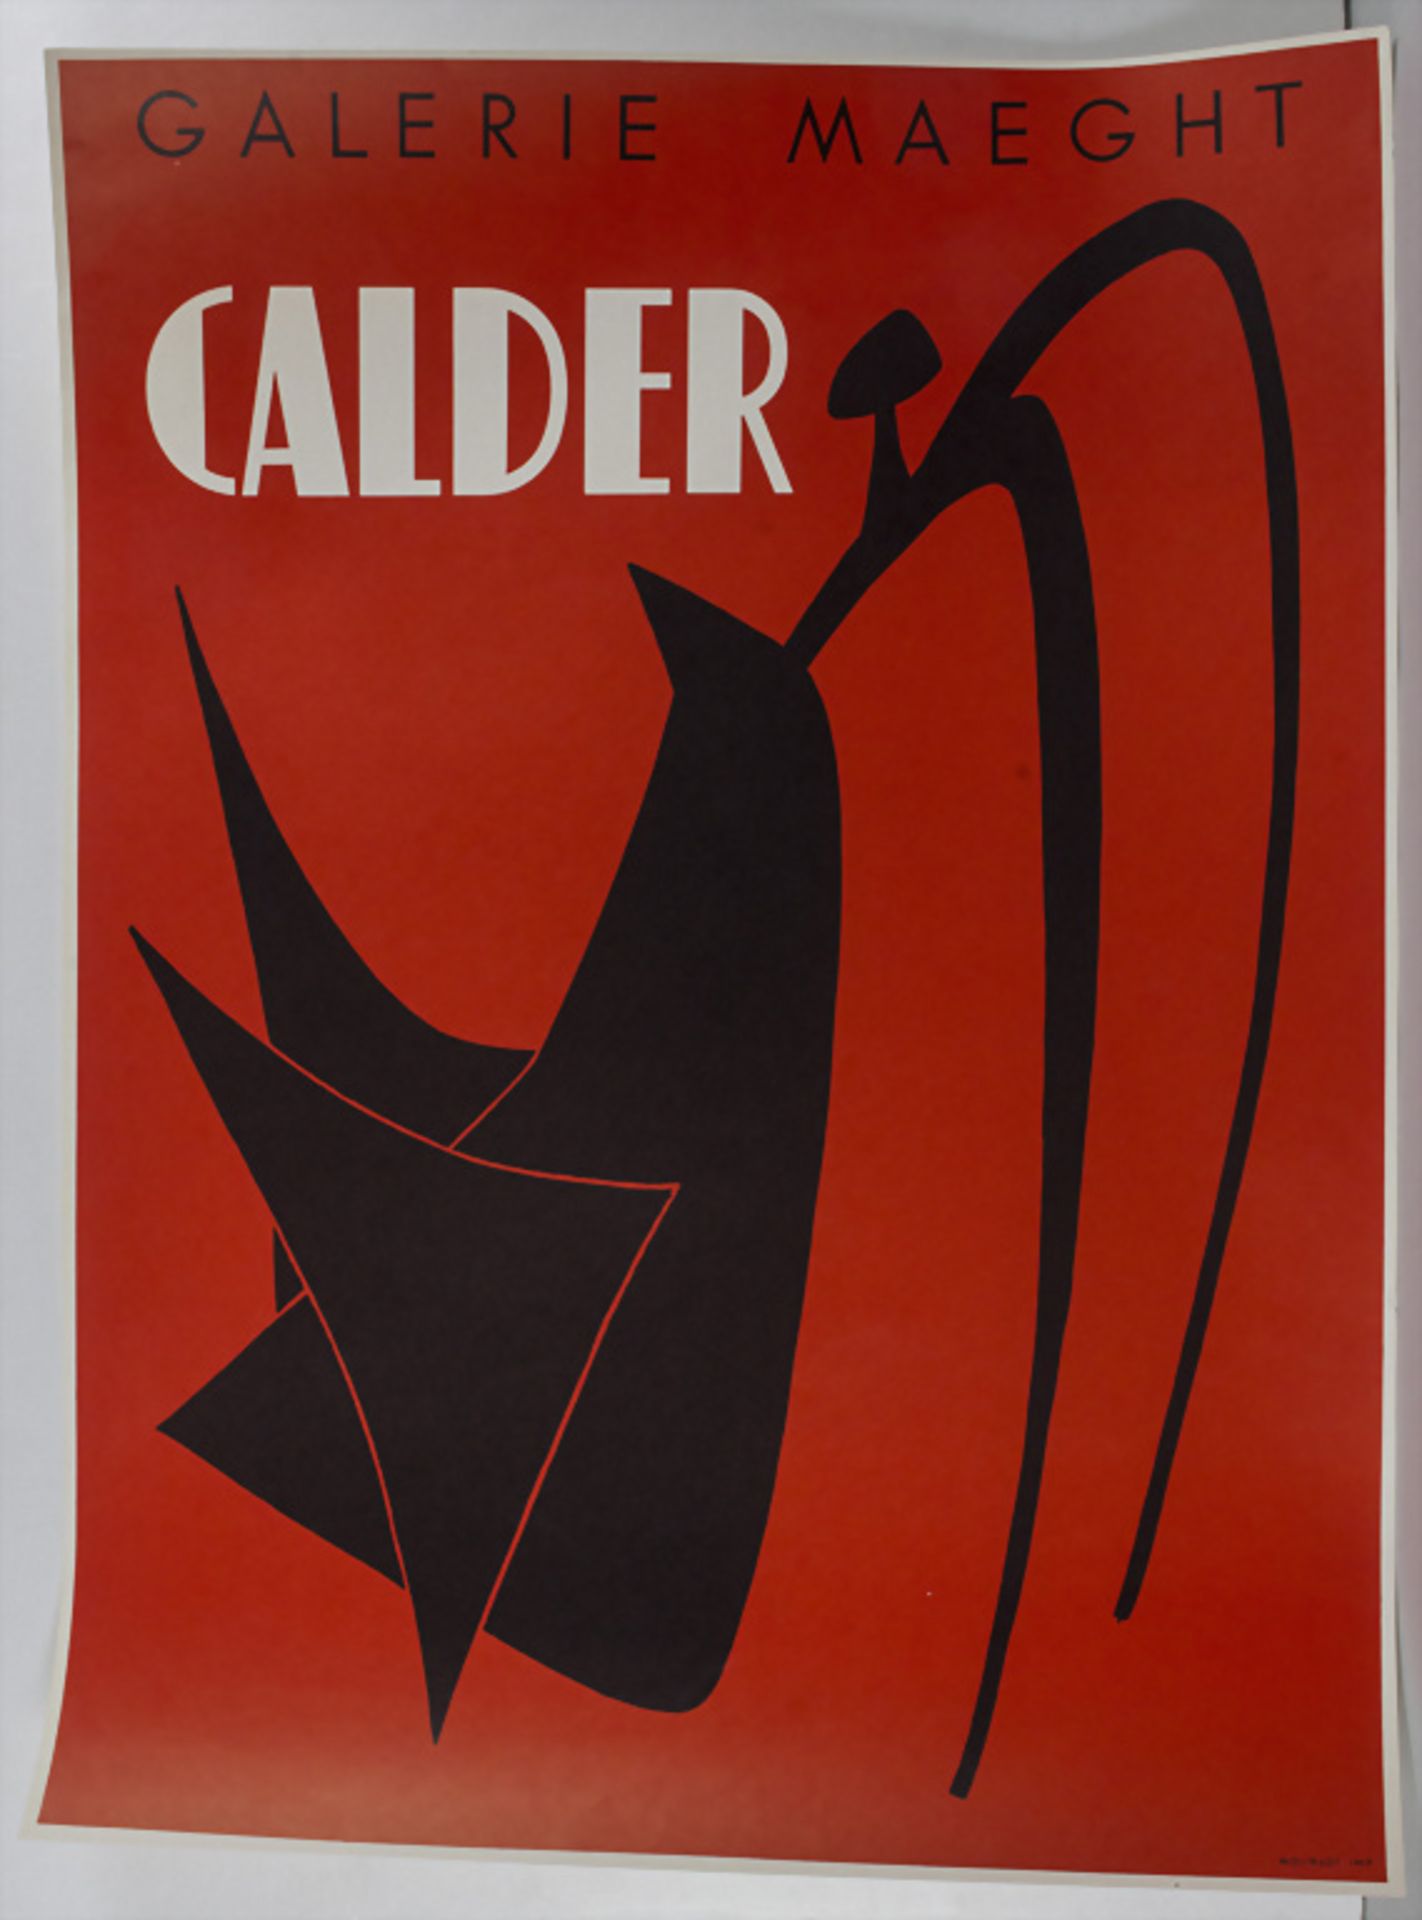 Alexander Calder (1898-1976), Ausstellungsplakat Galerie Maeght / An exhibtion poster, 1959